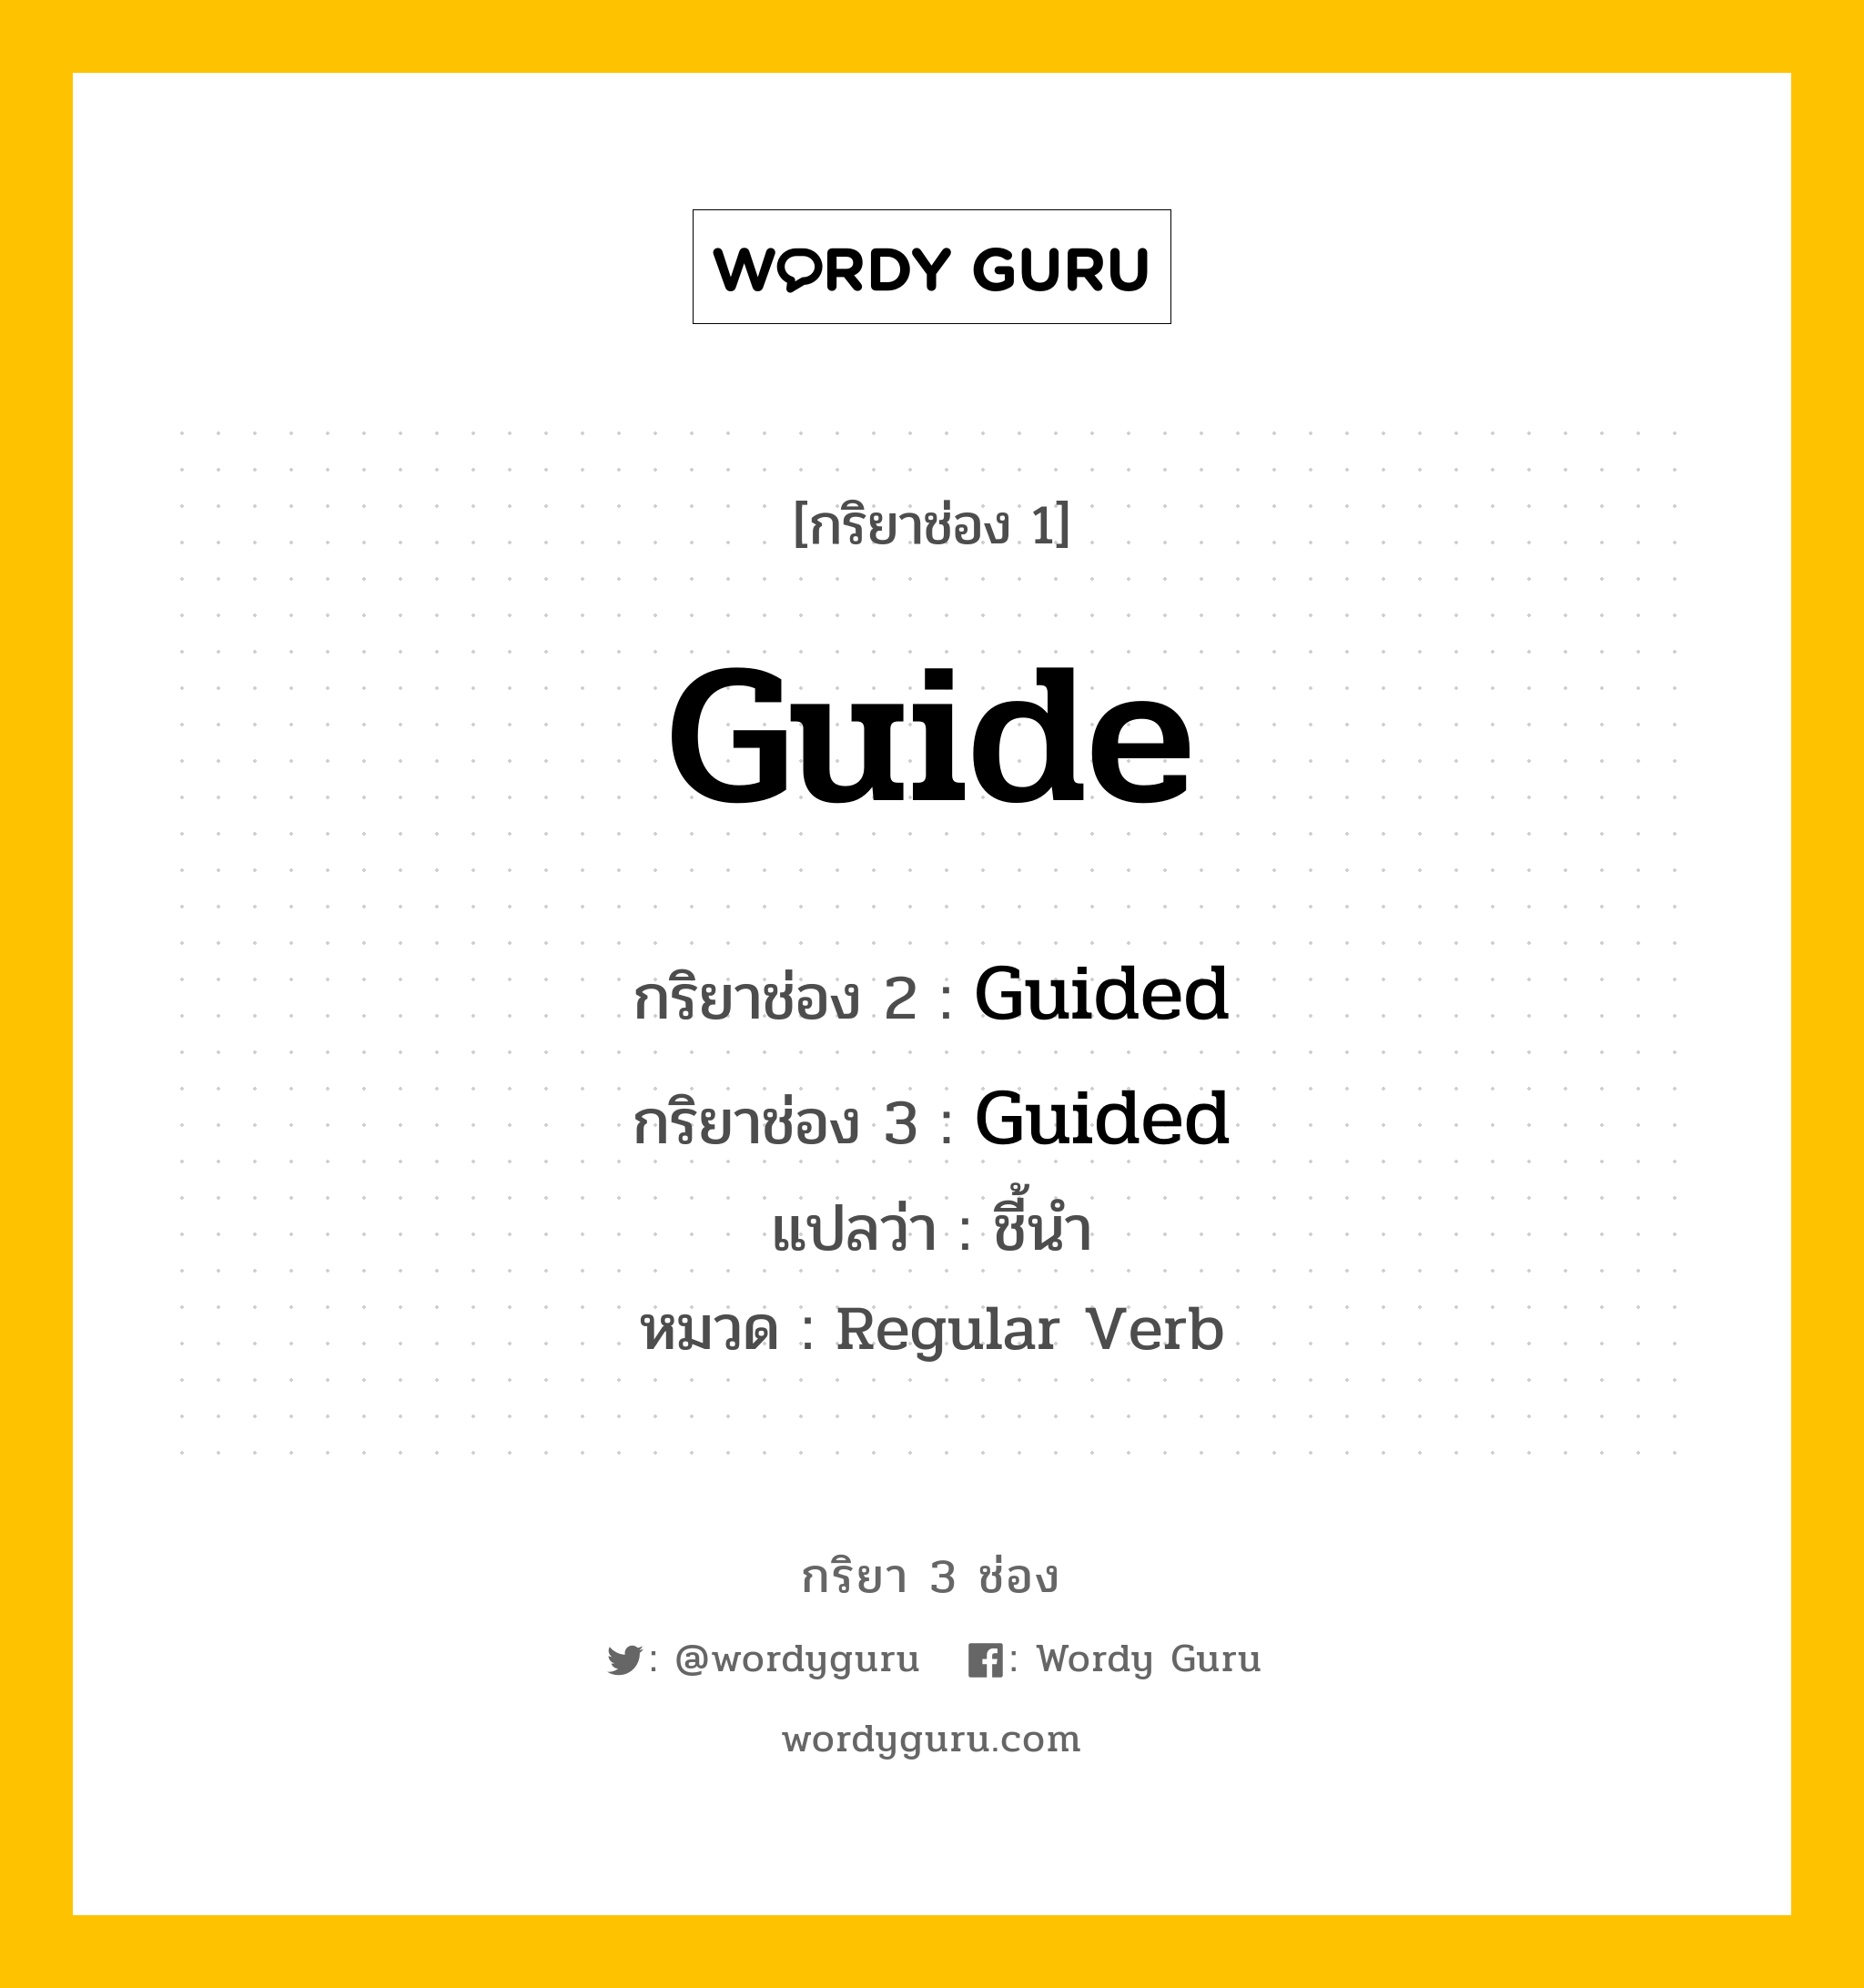 กริยา 3 ช่อง ของ Guide คืออะไร? มาดูคำอ่าน คำแปลกันเลย, กริยาช่อง 1 Guide กริยาช่อง 2 Guided กริยาช่อง 3 Guided แปลว่า ชี้นำ หมวด Regular Verb หมวด Regular Verb